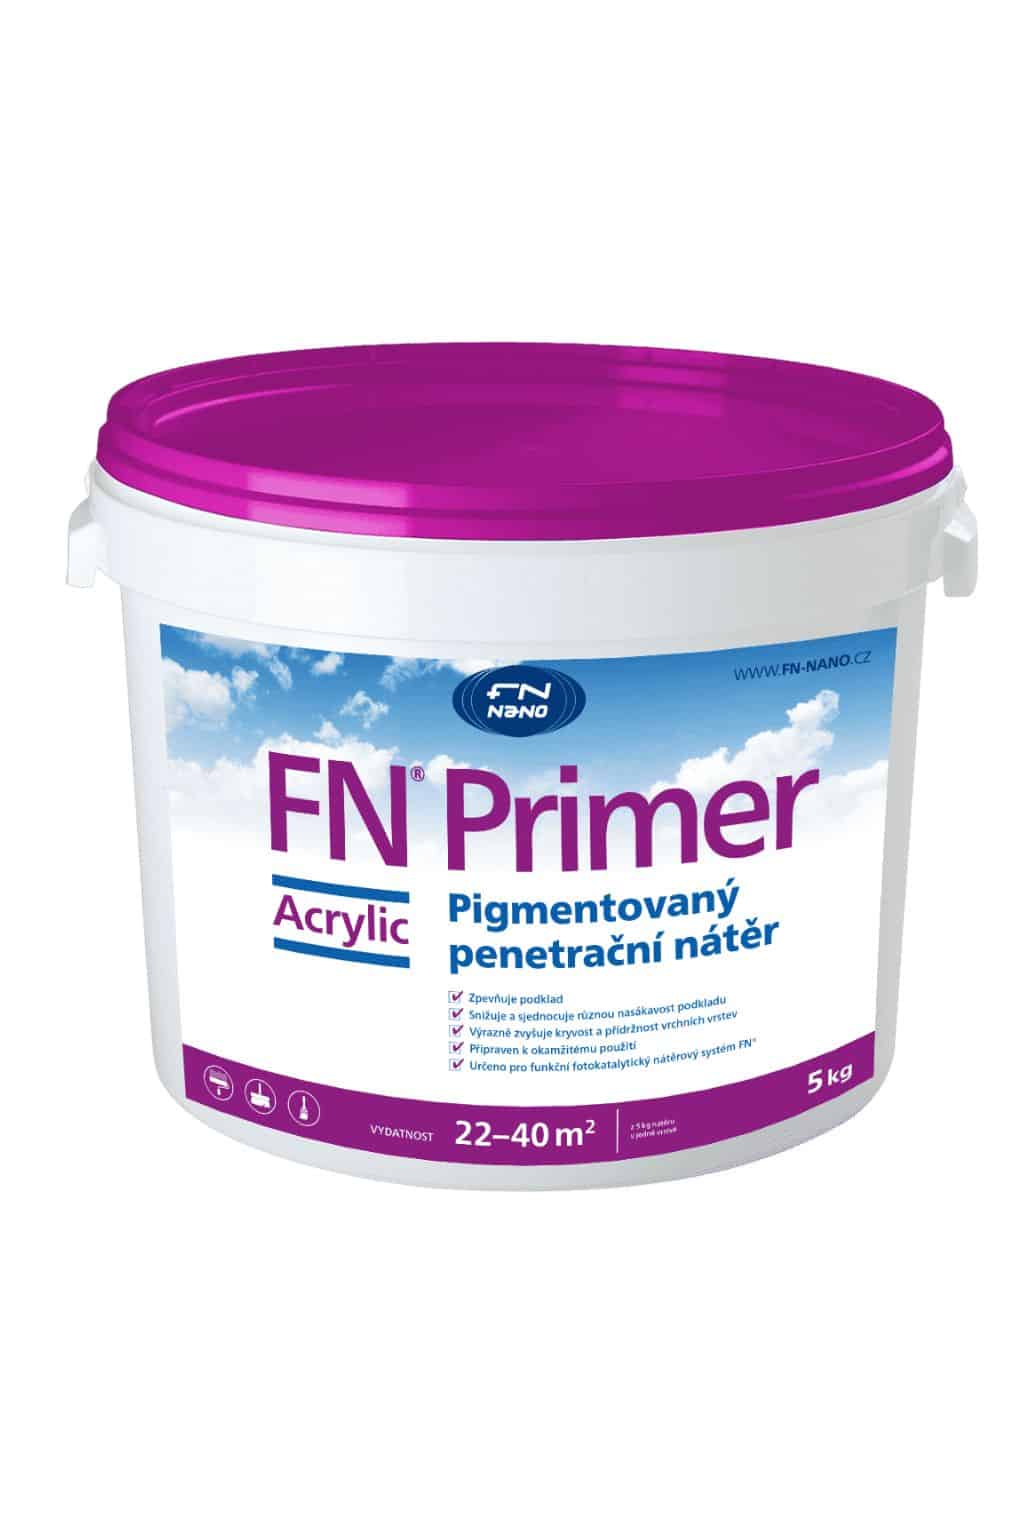 Pigmentovaný penetrační nátěr FN NANO® Primer Acrylic